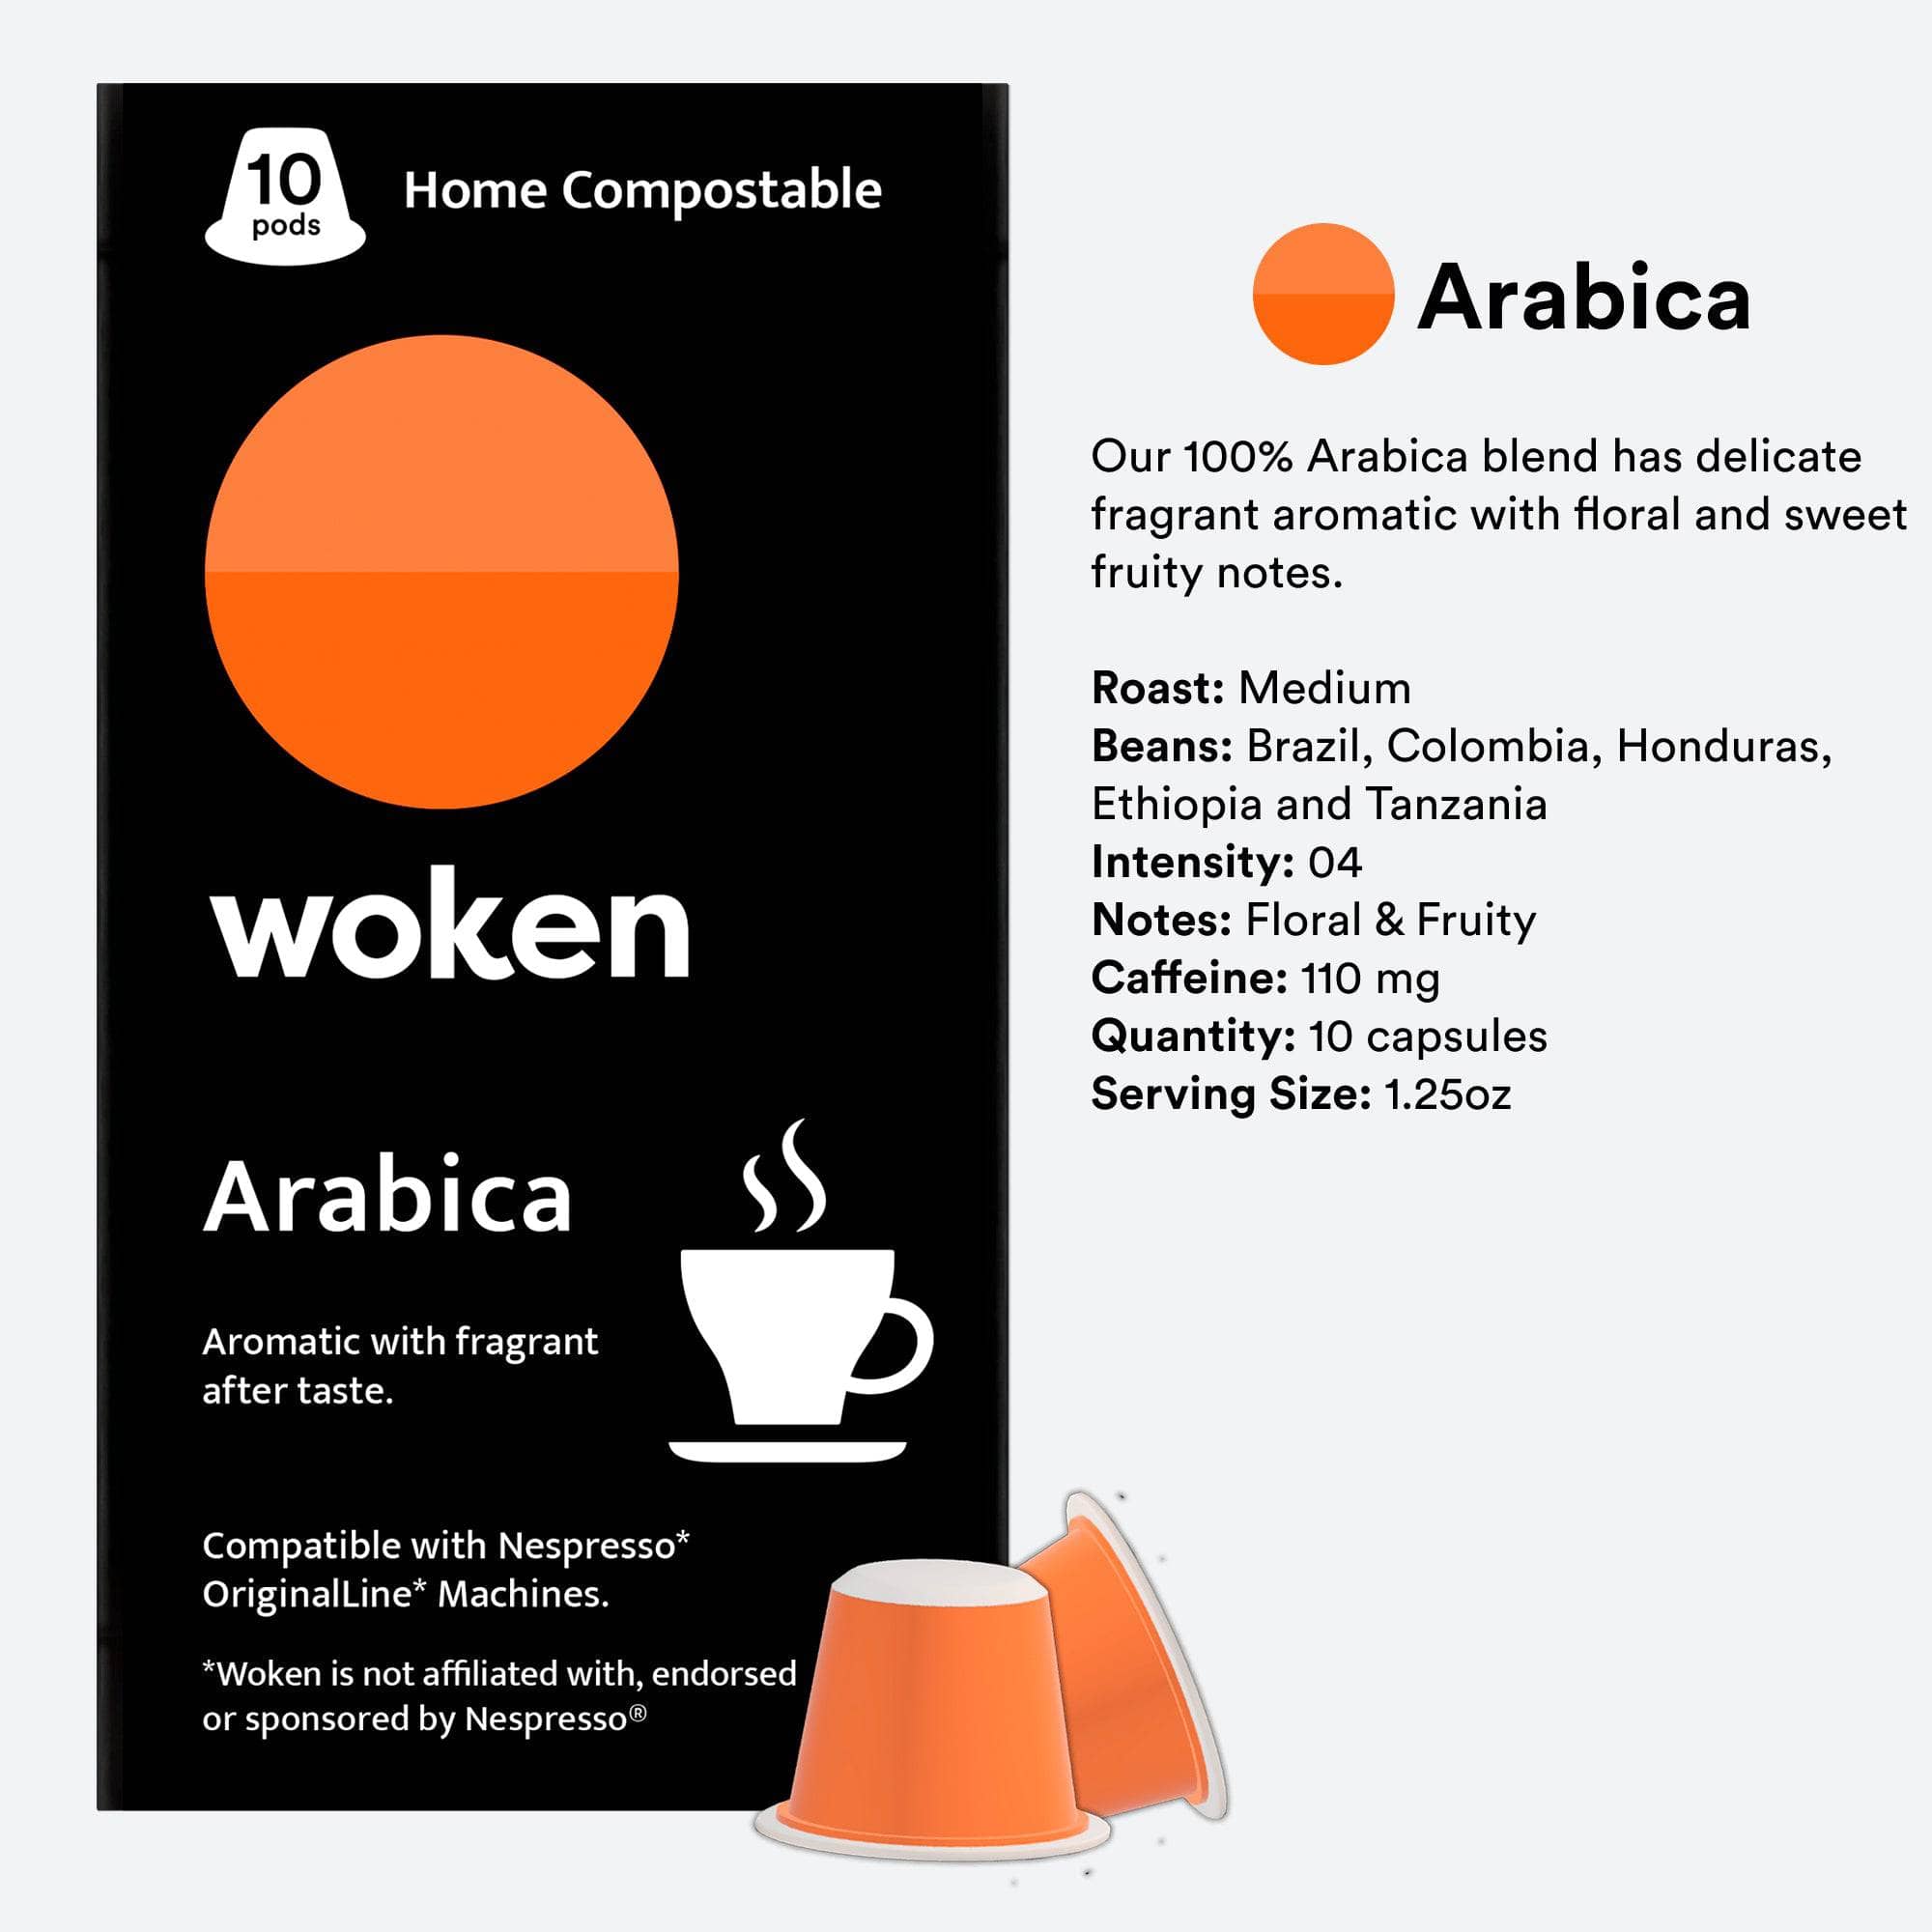 Woken-coffee Arabica Nespresso Orginalline Compostable Coffee Pods Eco-friendly nespresso pods Biodegradable coffee pods